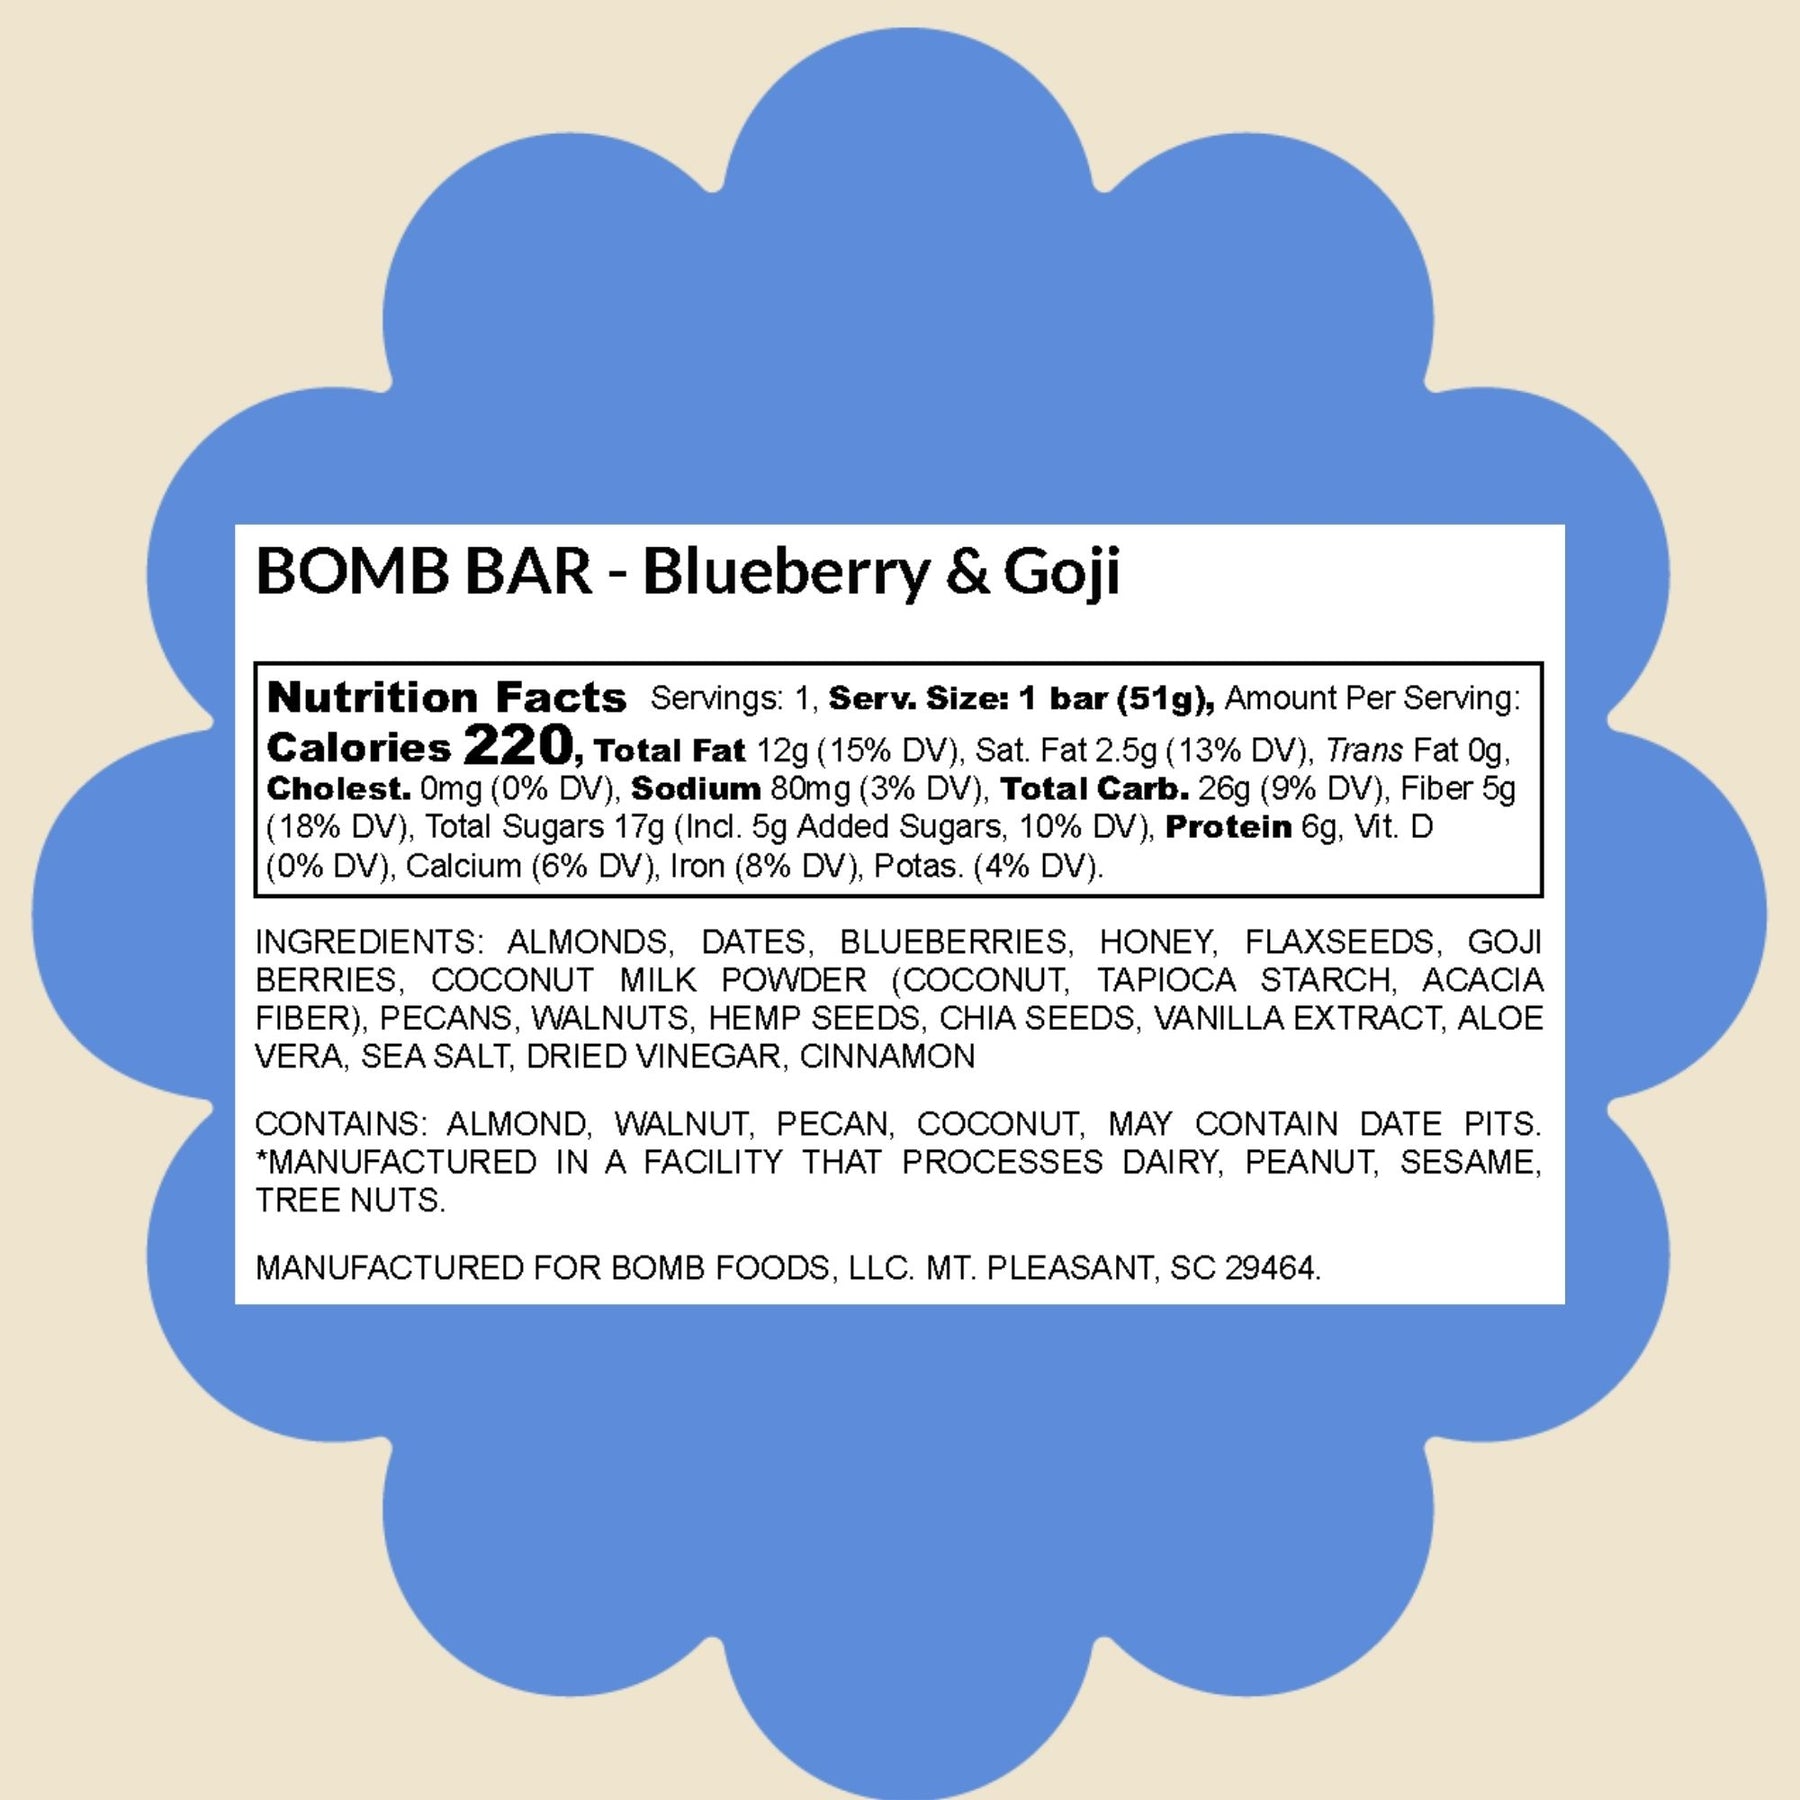 Blueberry & Goji Blender Bombs Bomb Bar